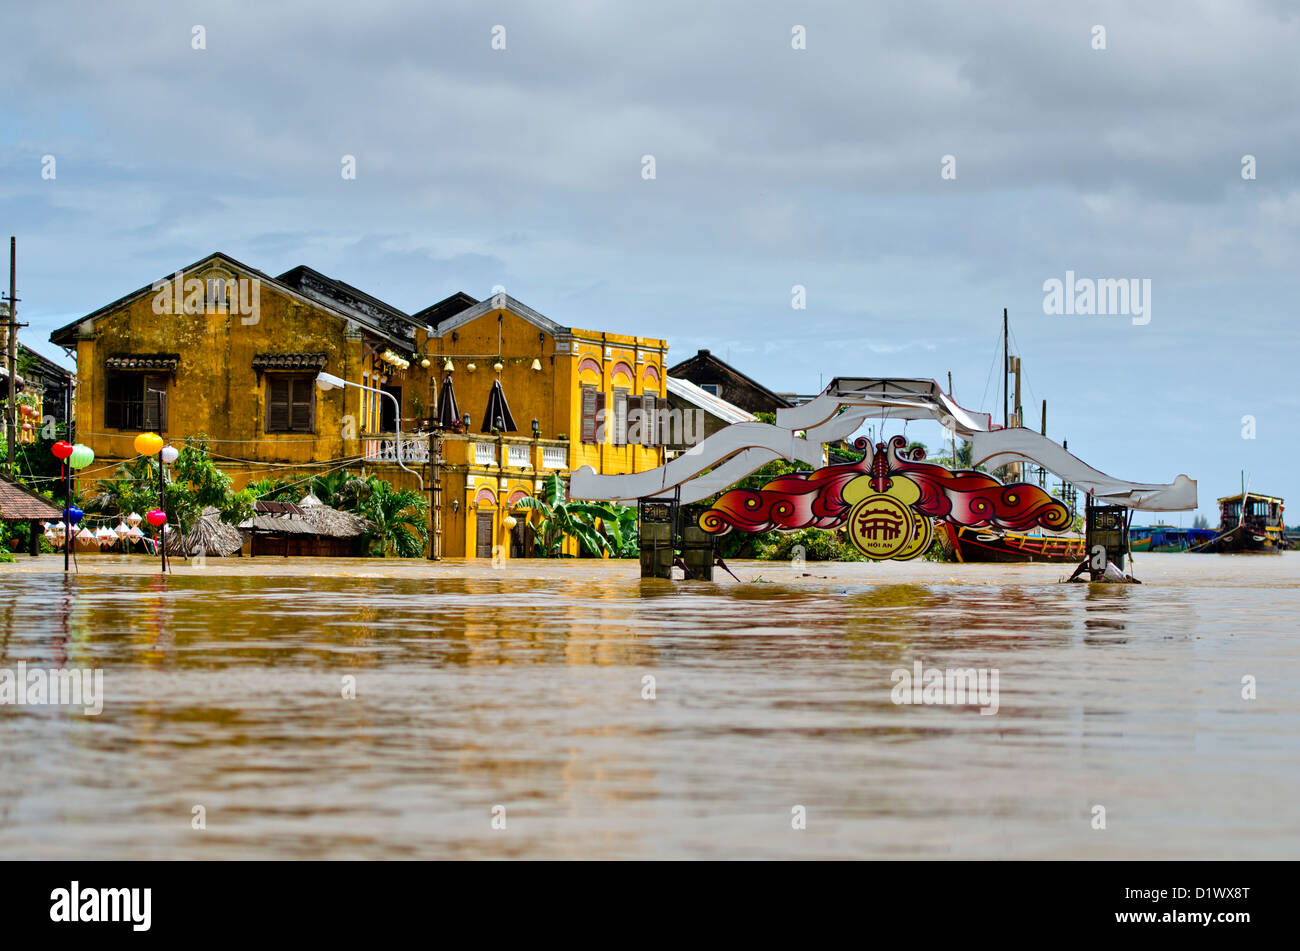 Decoraciones locales en la parte superior del puente inundado, Hoi An, Vietnam Foto de stock